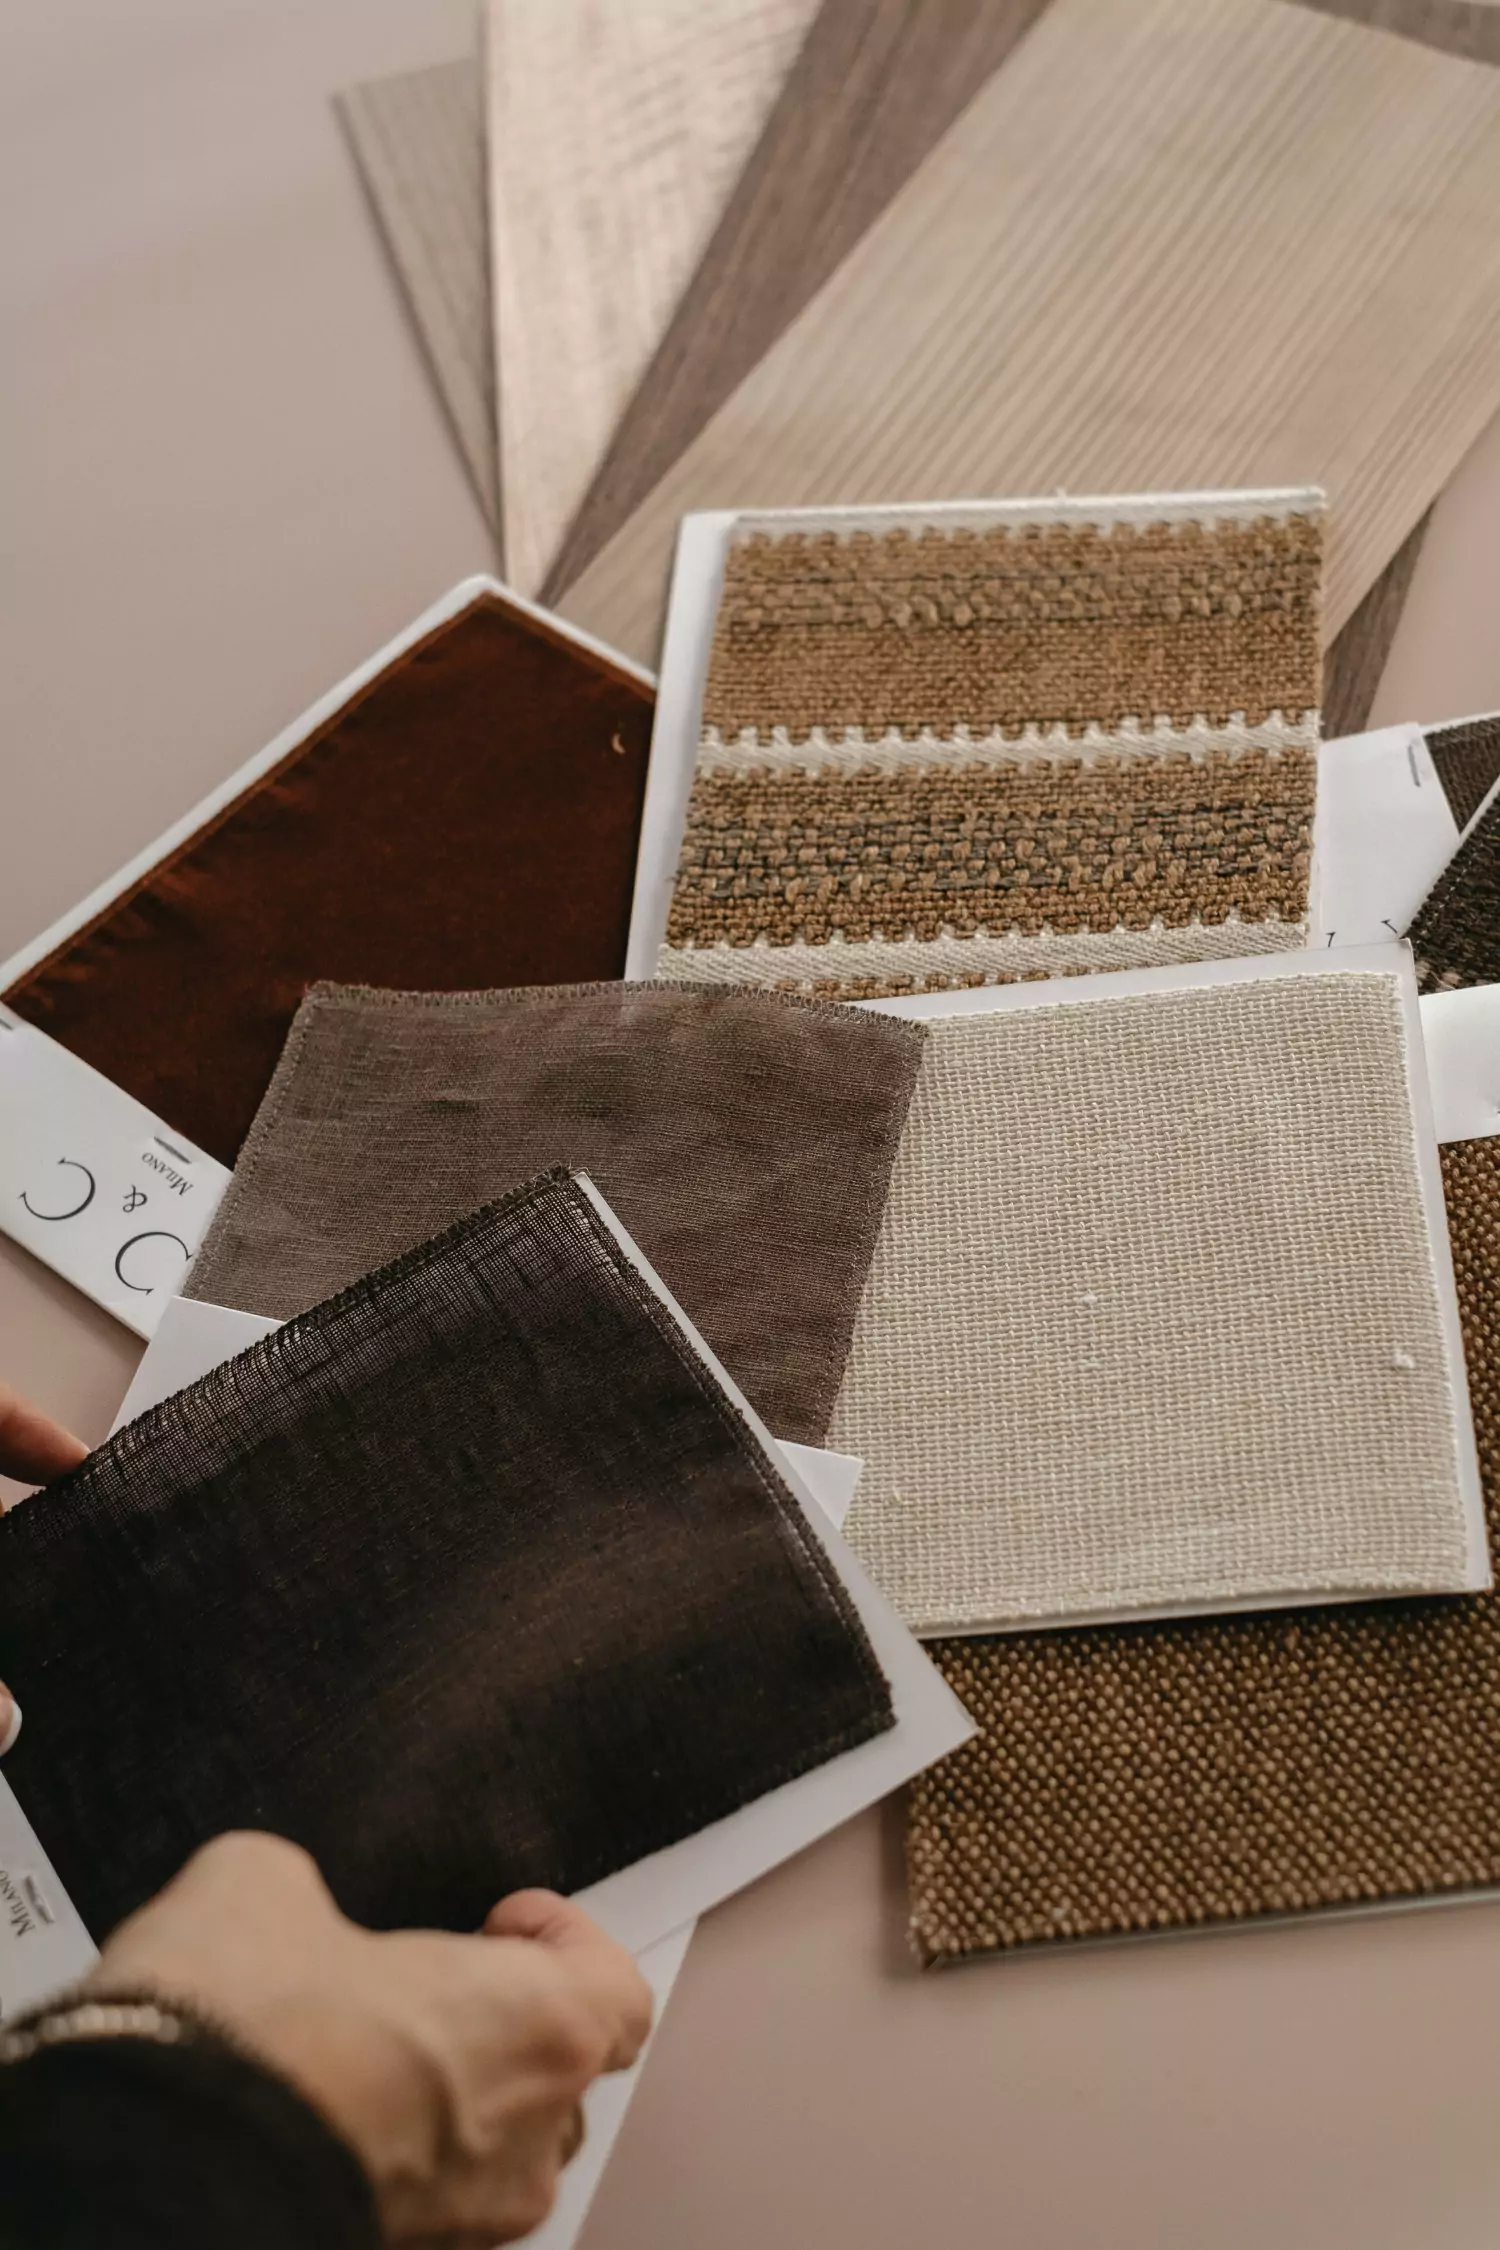 L'architecte d'intérieur Stefania Luraghi tient un échantillon de tissu sélectionné pour la tapisserie d'un projet d'ameublement.